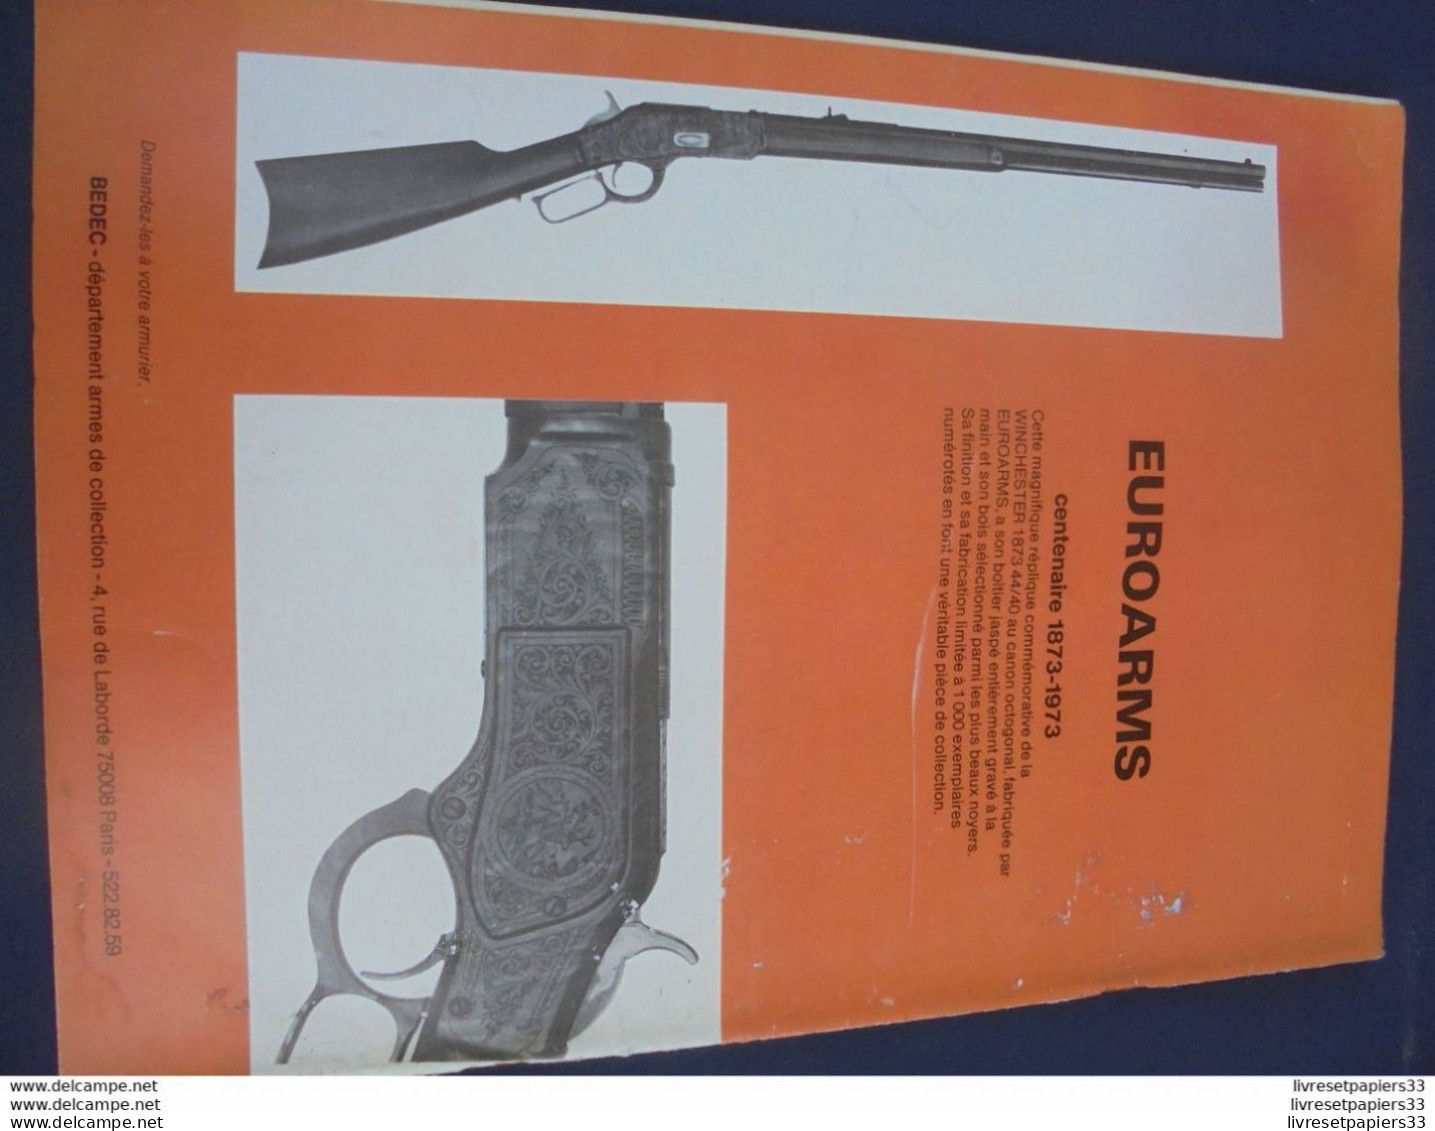 Gazette Des Armes. La Poudre Noire N°13 FEVRIER 1974 - Weapons